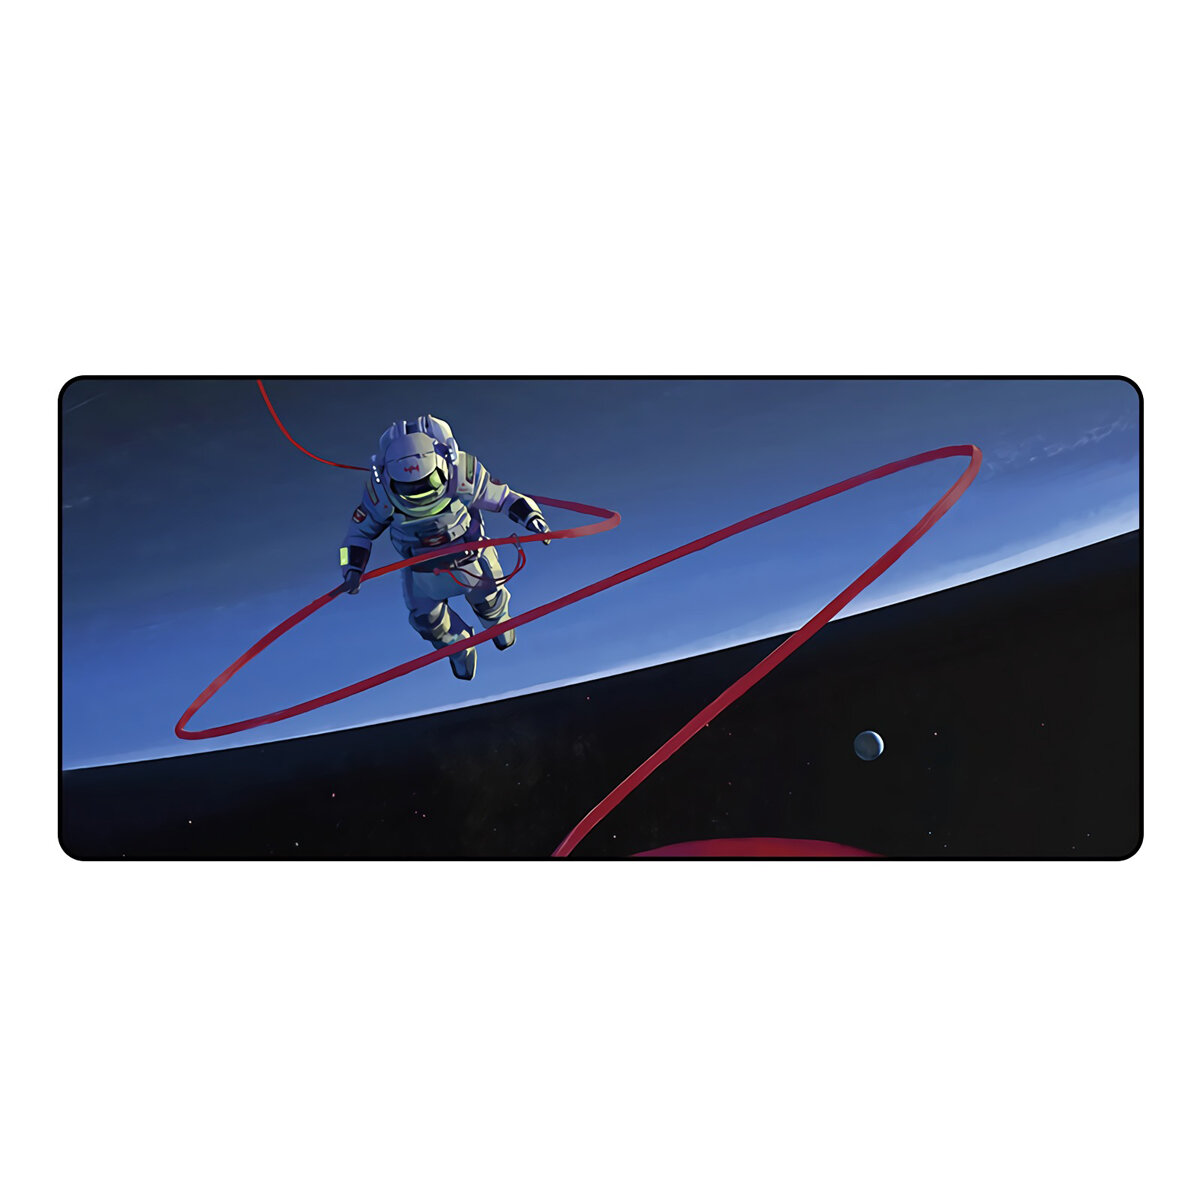 

FBB Astronaut Extra Large Мышь Pad Patterns Противоскользящая резиновая игровая площадка Клавиатура Pad 900 * 400 * 4 мм